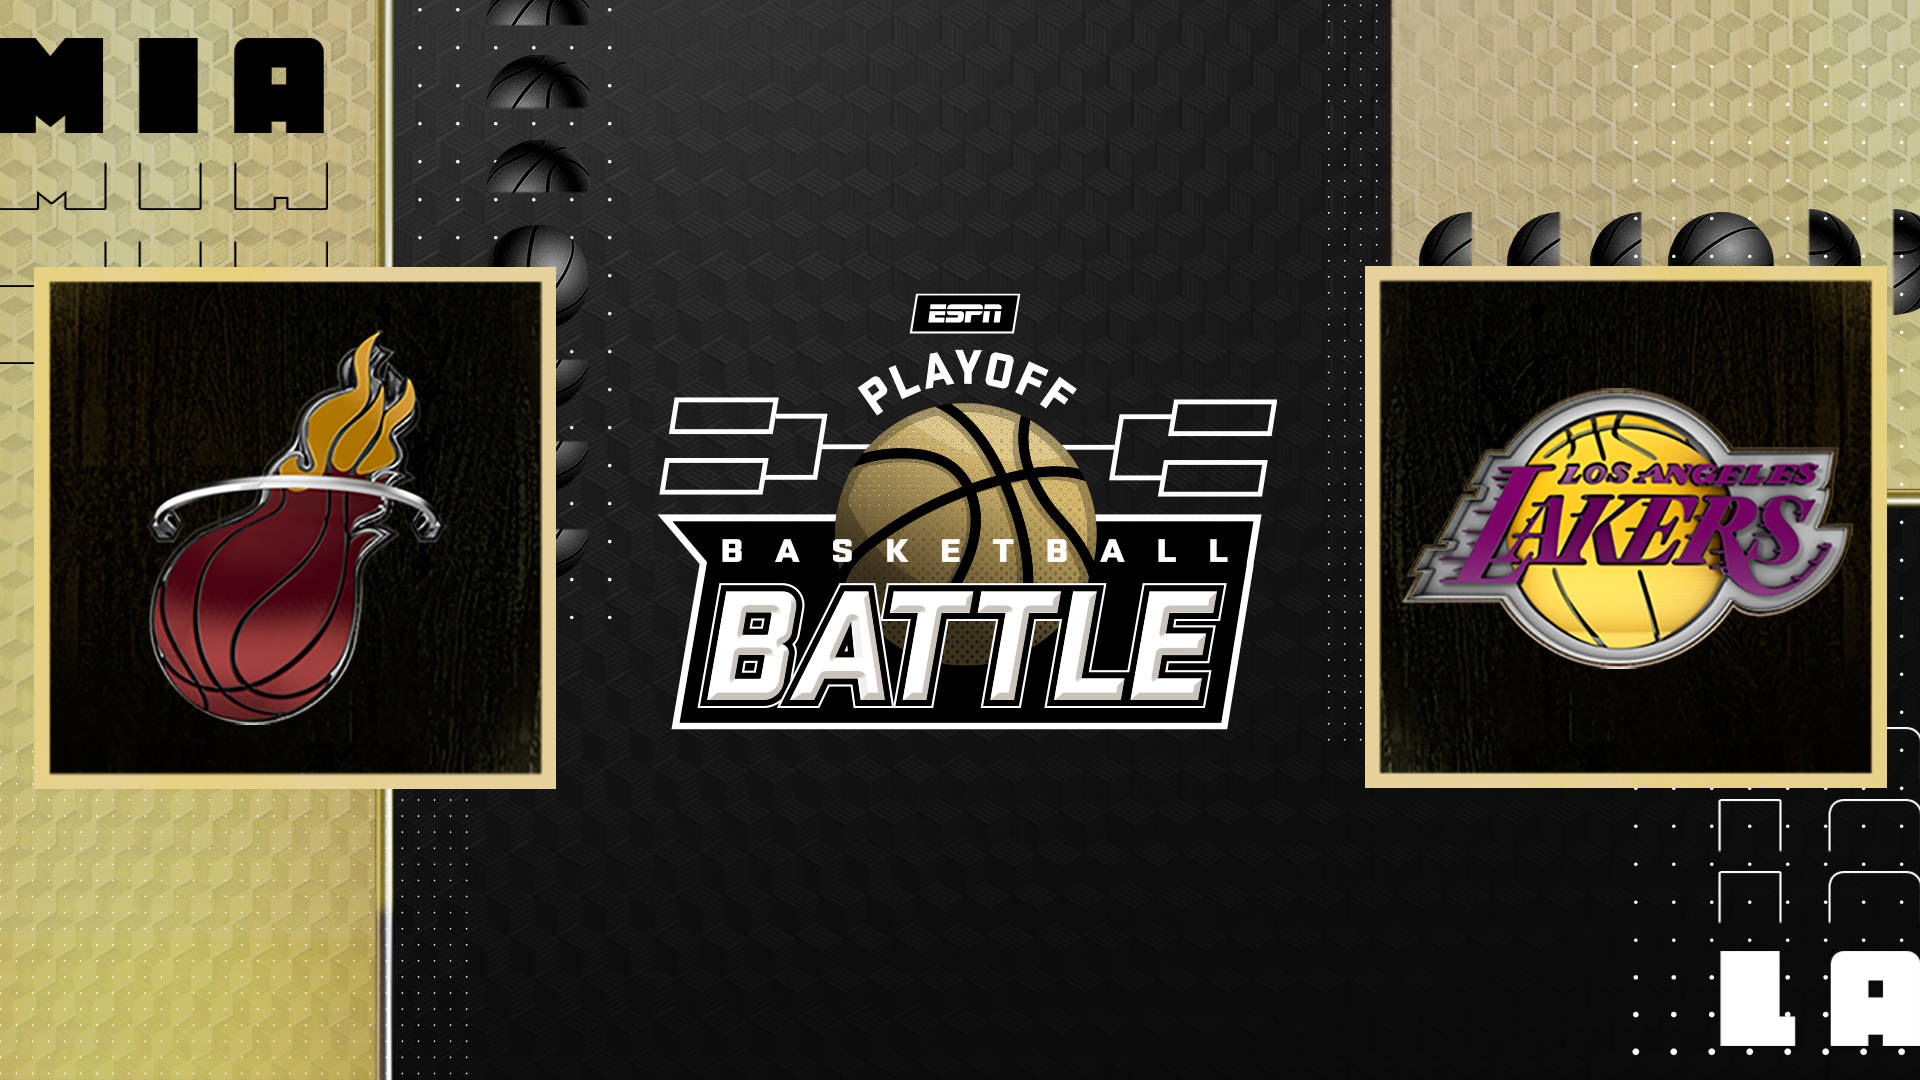 Download NBA Finals Playoff Battle Poster Wallpaper | Wallpapers.com